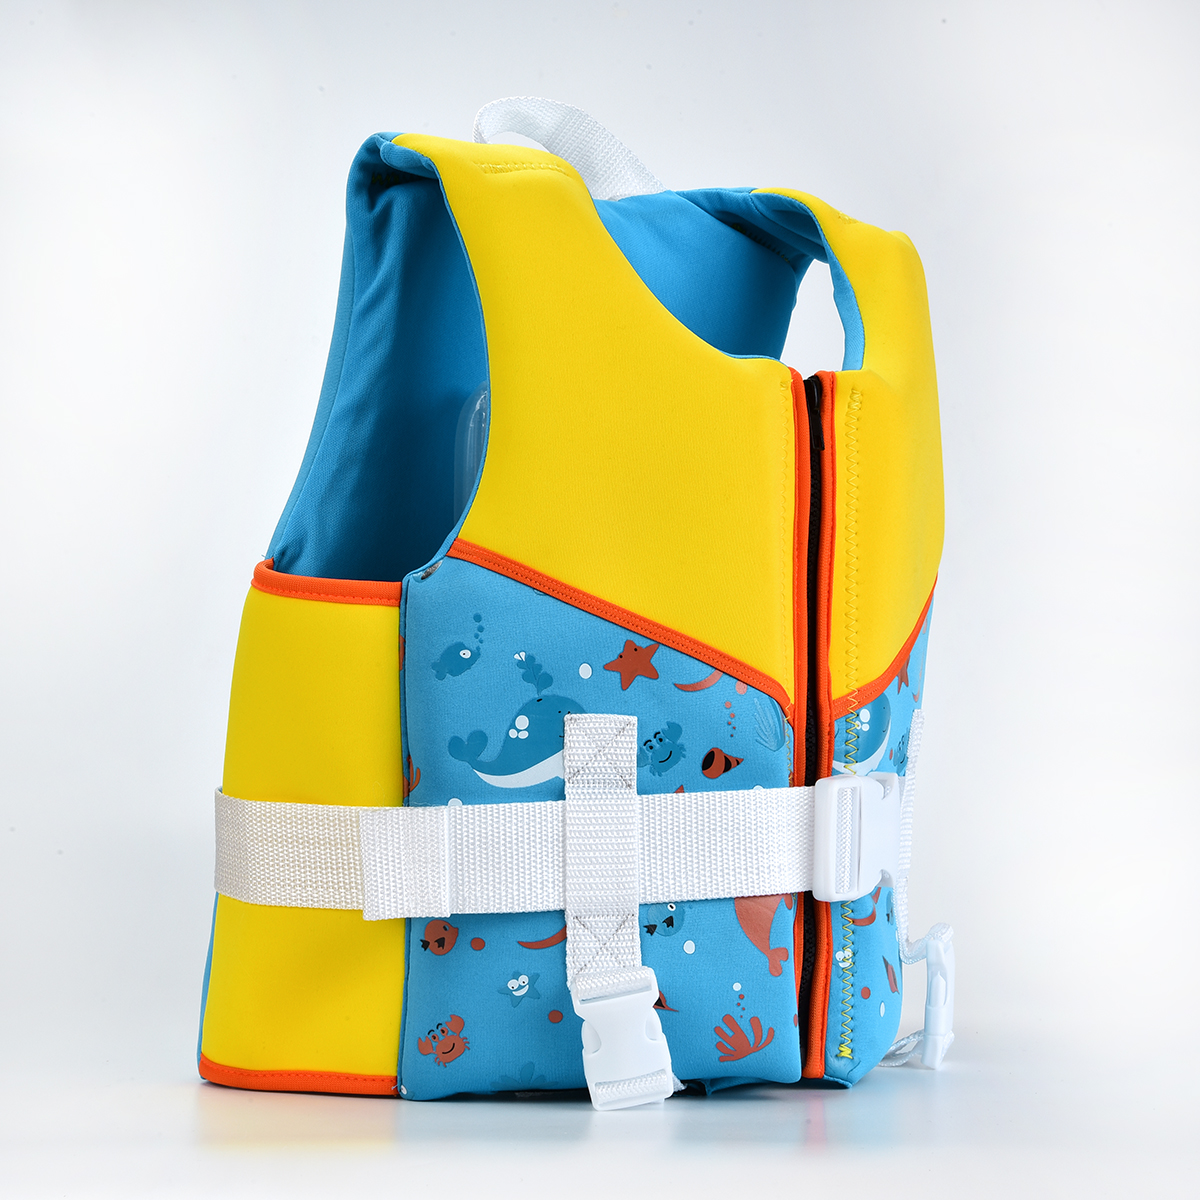 Children-Kids-Swim-Floatation-Vest-Life-Jacket-Safety-Swimming-Buoyancy-Float-Aid-Jacket-1529752-5